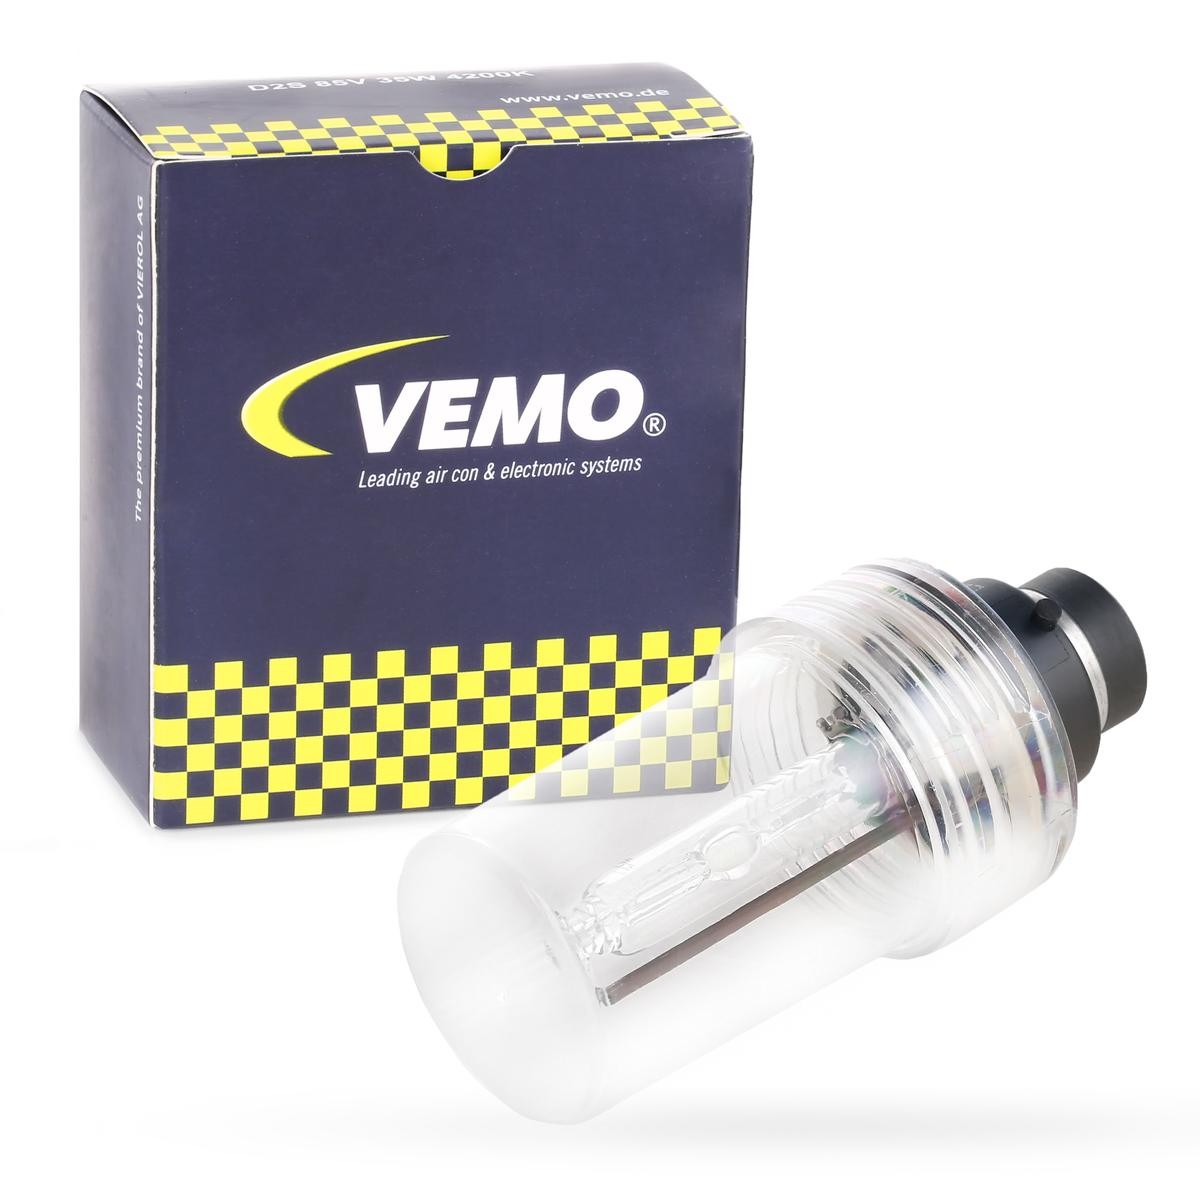 D2S VEMO D2S (Gasentladungslampe) 85V 35W P32d-2 6000K Xenon Original VEMO Qualität Glühlampe, Fernscheinwerfer V99-84-0016 günstig kaufen